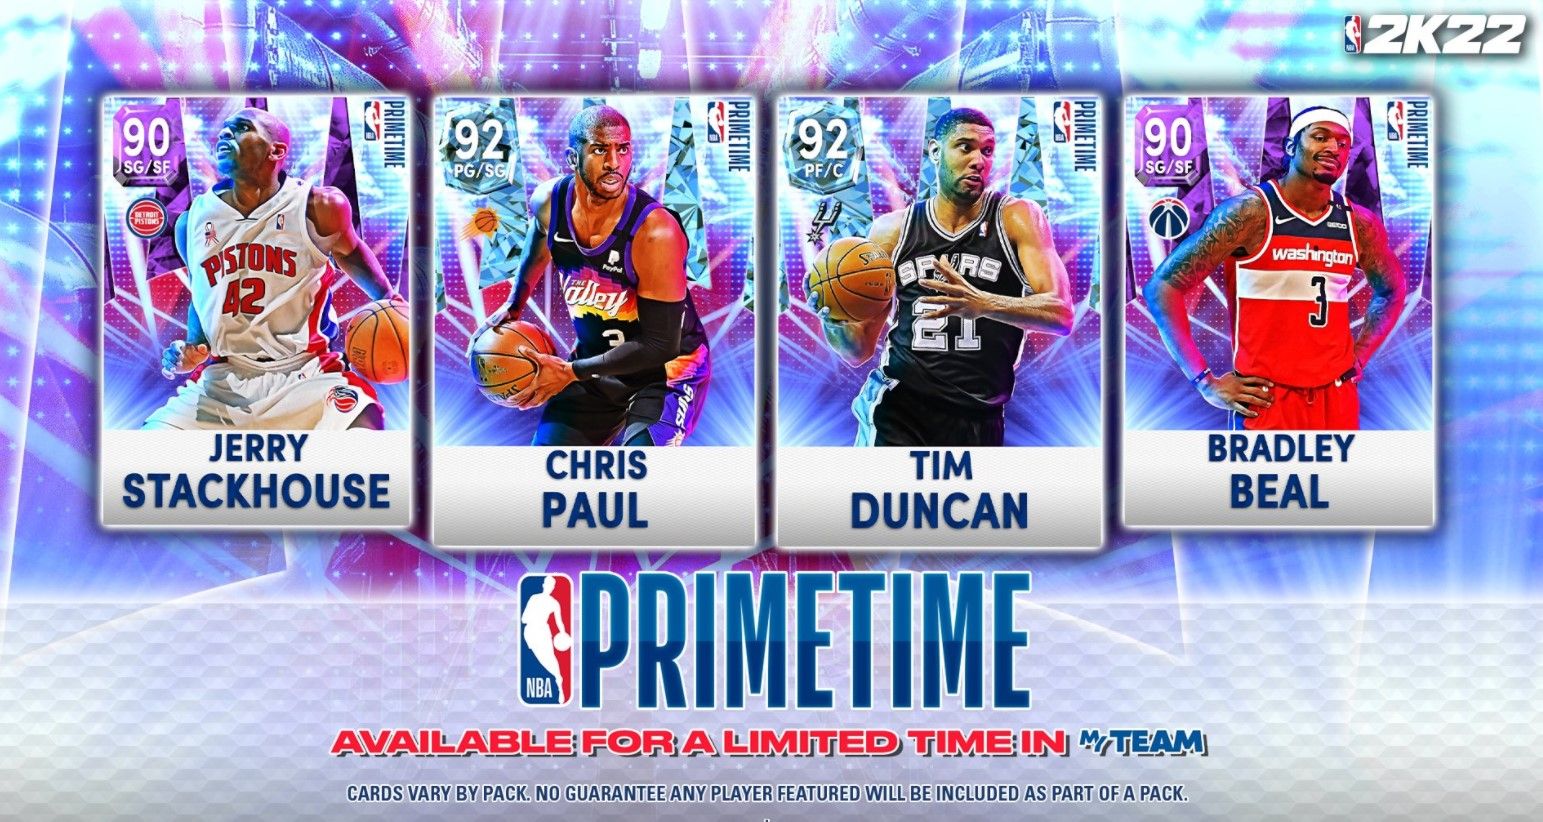 The Primetime set in NBA 2K22 